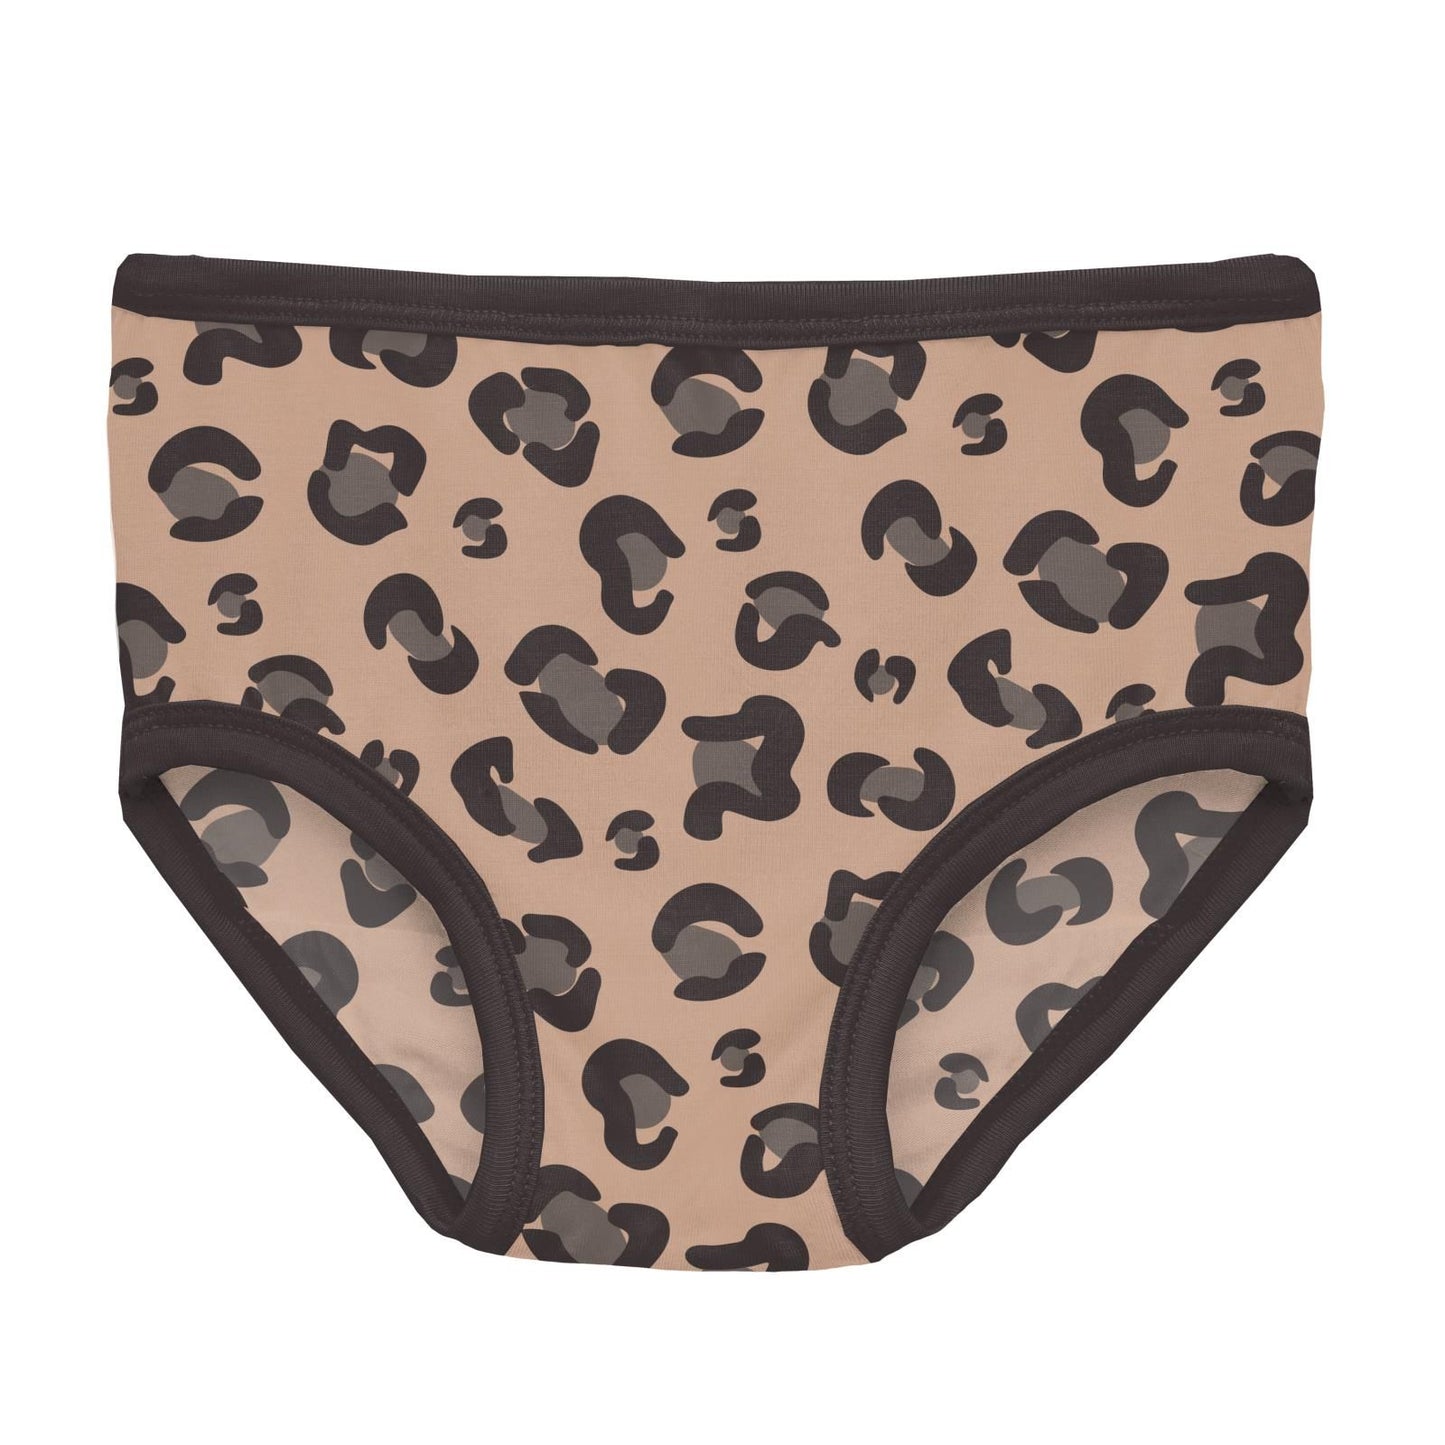 Underwear - Suede Cheetah Print